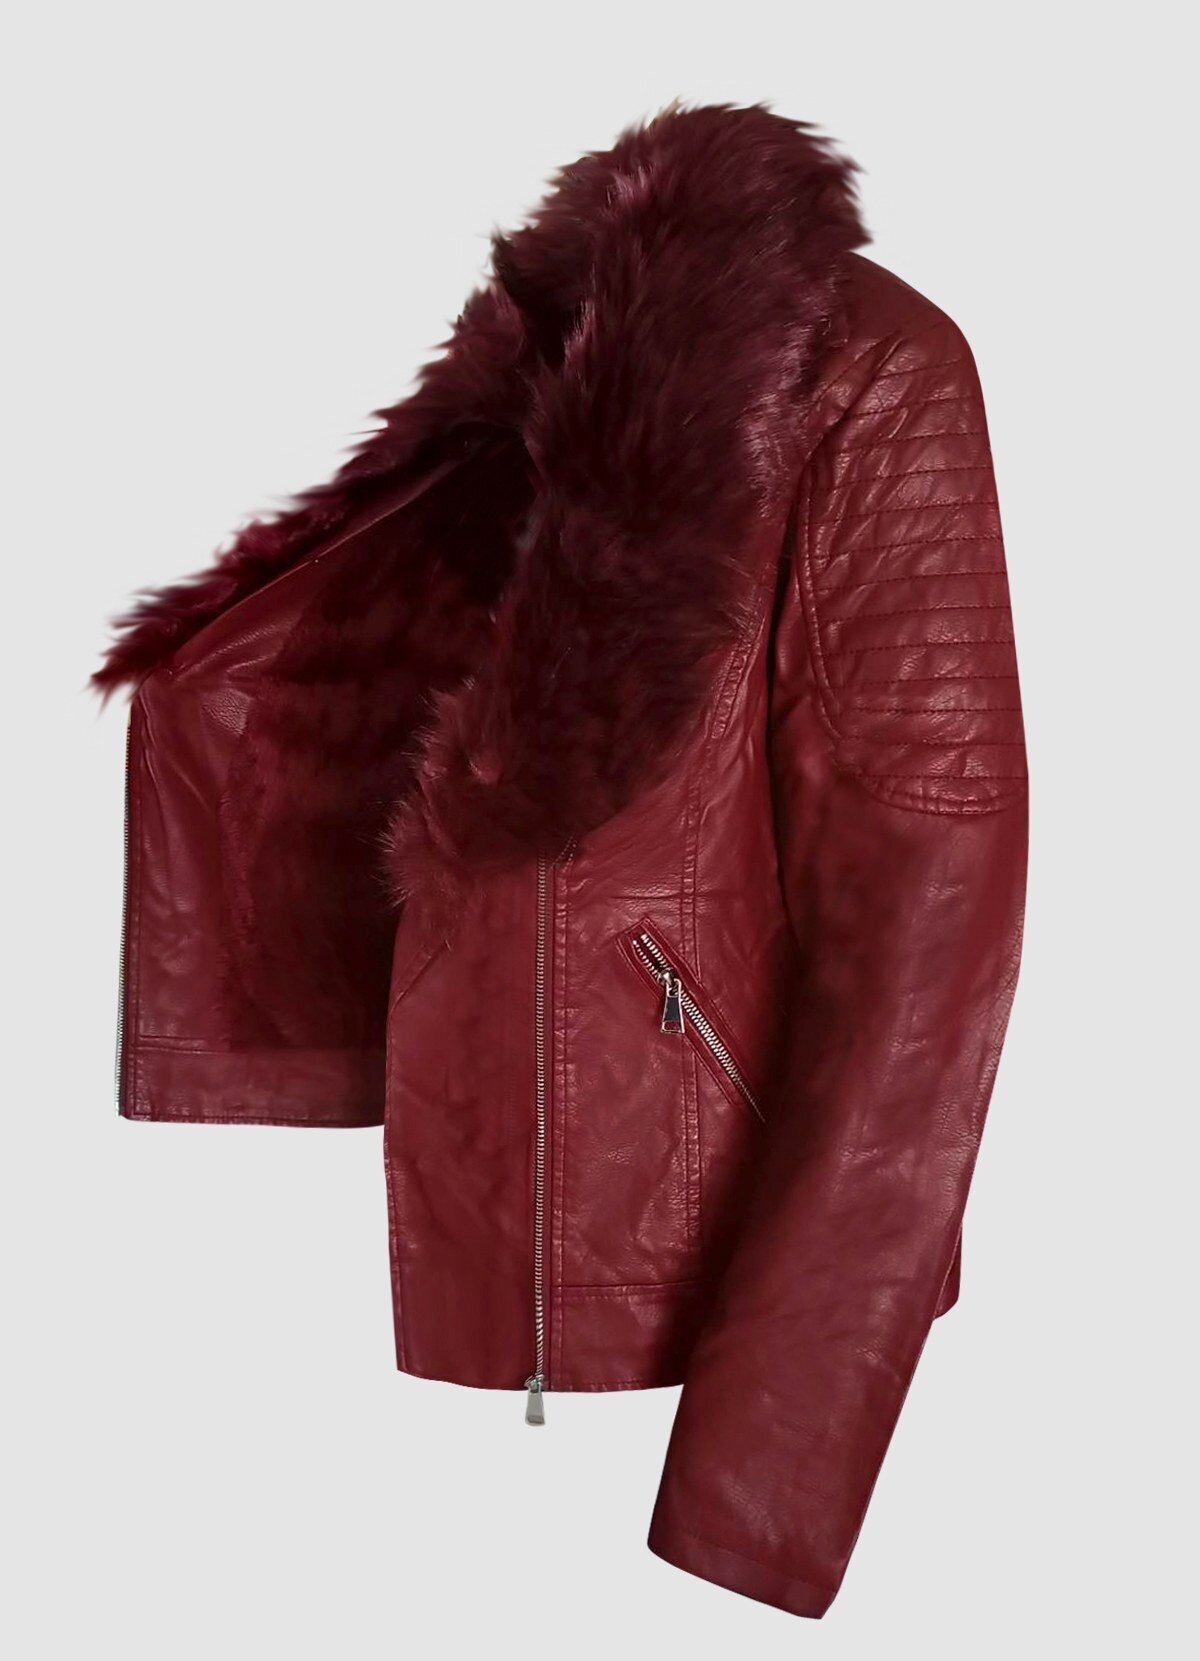 δερματίνη jacket με γούνα στο γιακά plus size F/W 2022/23 - Parizianista.gr